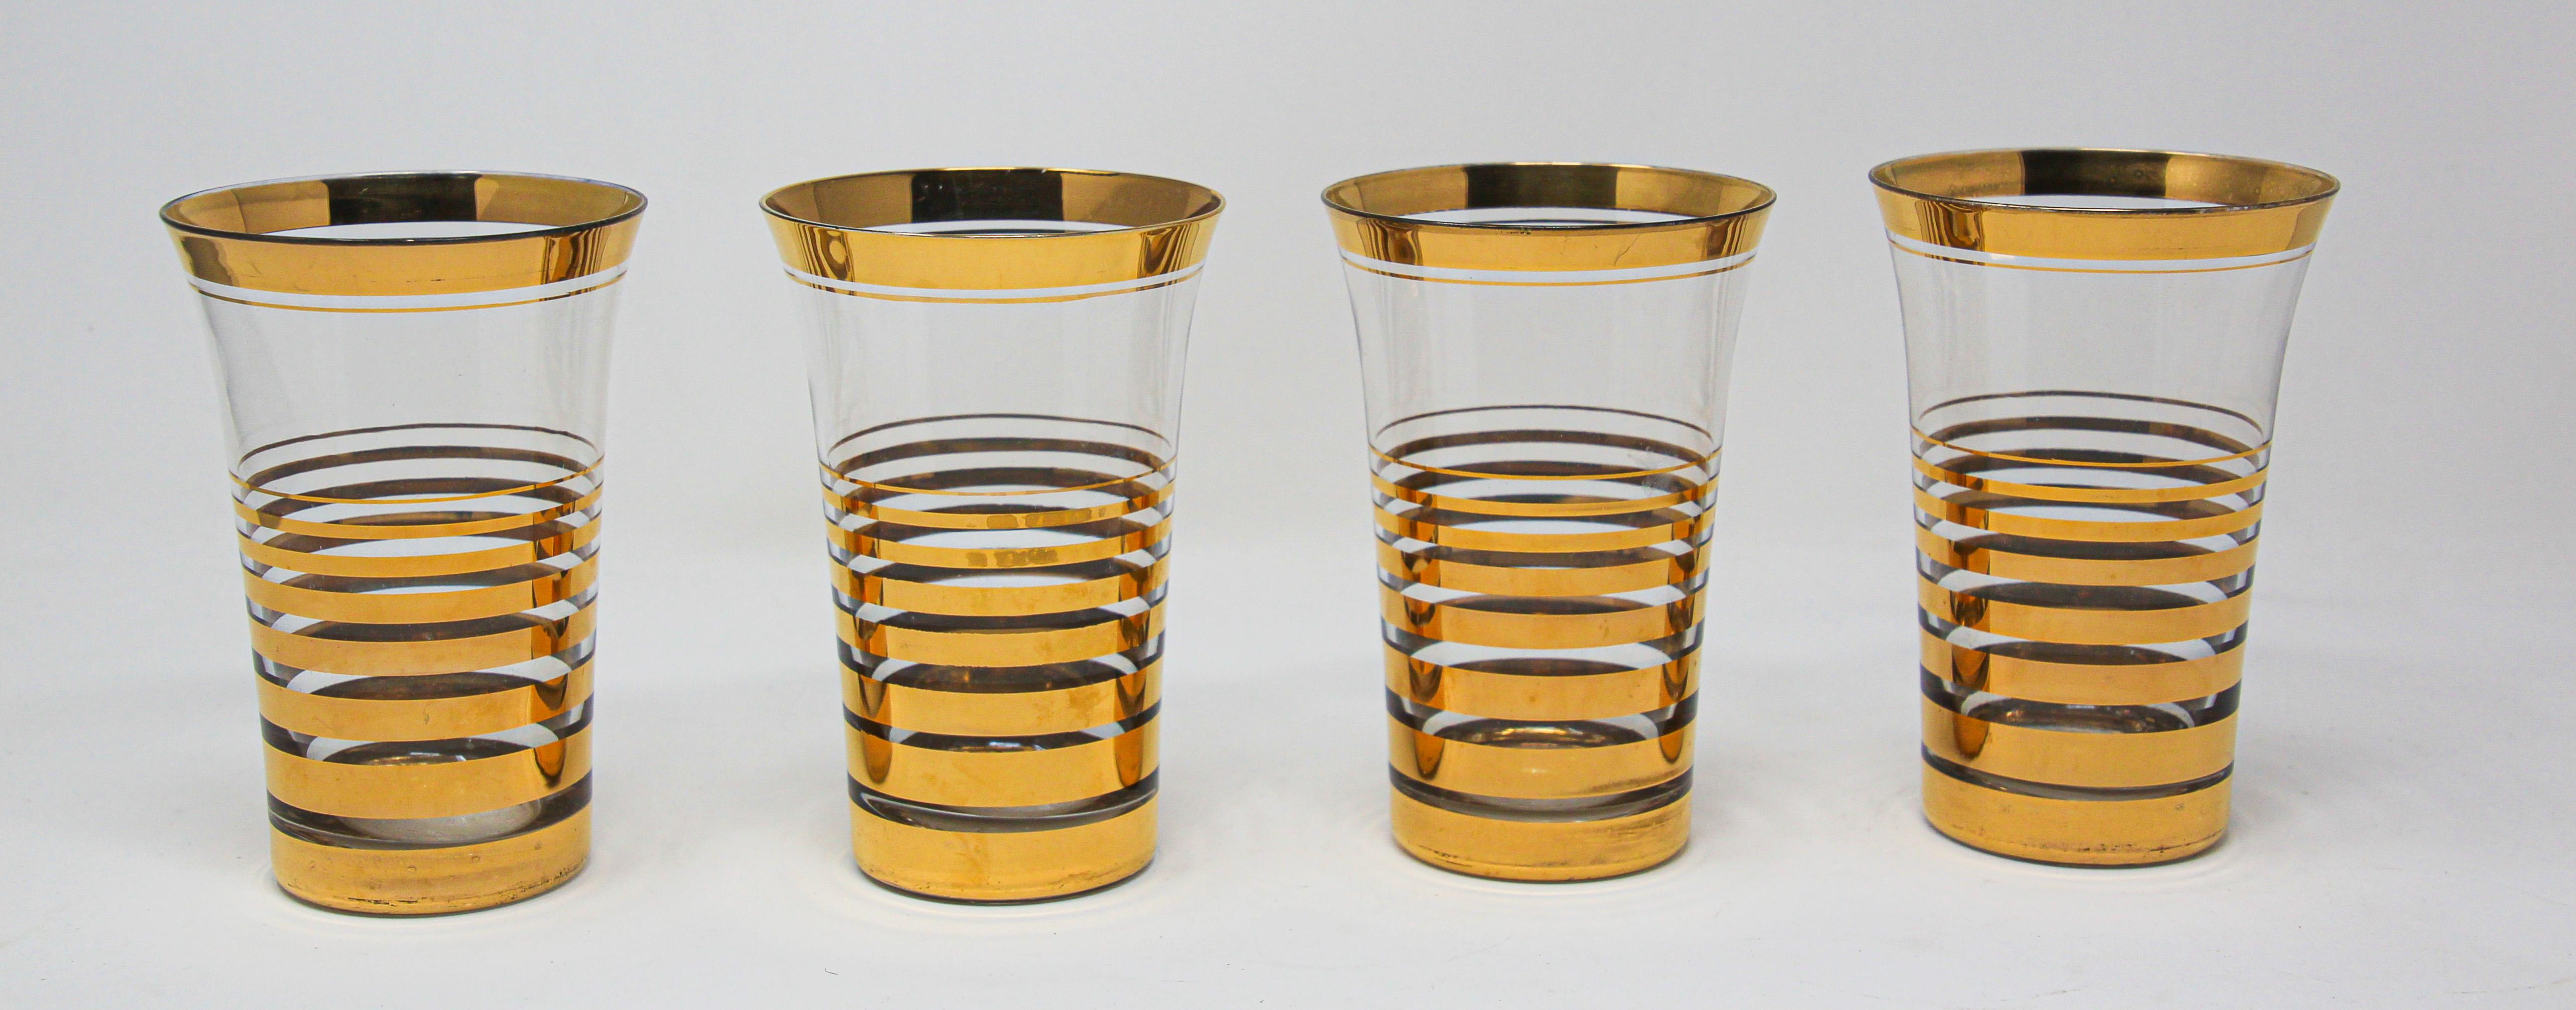 Elegante französische Vintage-Cocktailgläser mit einem Muster in Blattgoldoptik.
Das Set enthält 4 Cocktailgläser im Moser-Design.
Dieses fabelhafte, elegante Barbesteck mit 22-karätigem Golddekor ist mit einem schlichten Muster in Gold